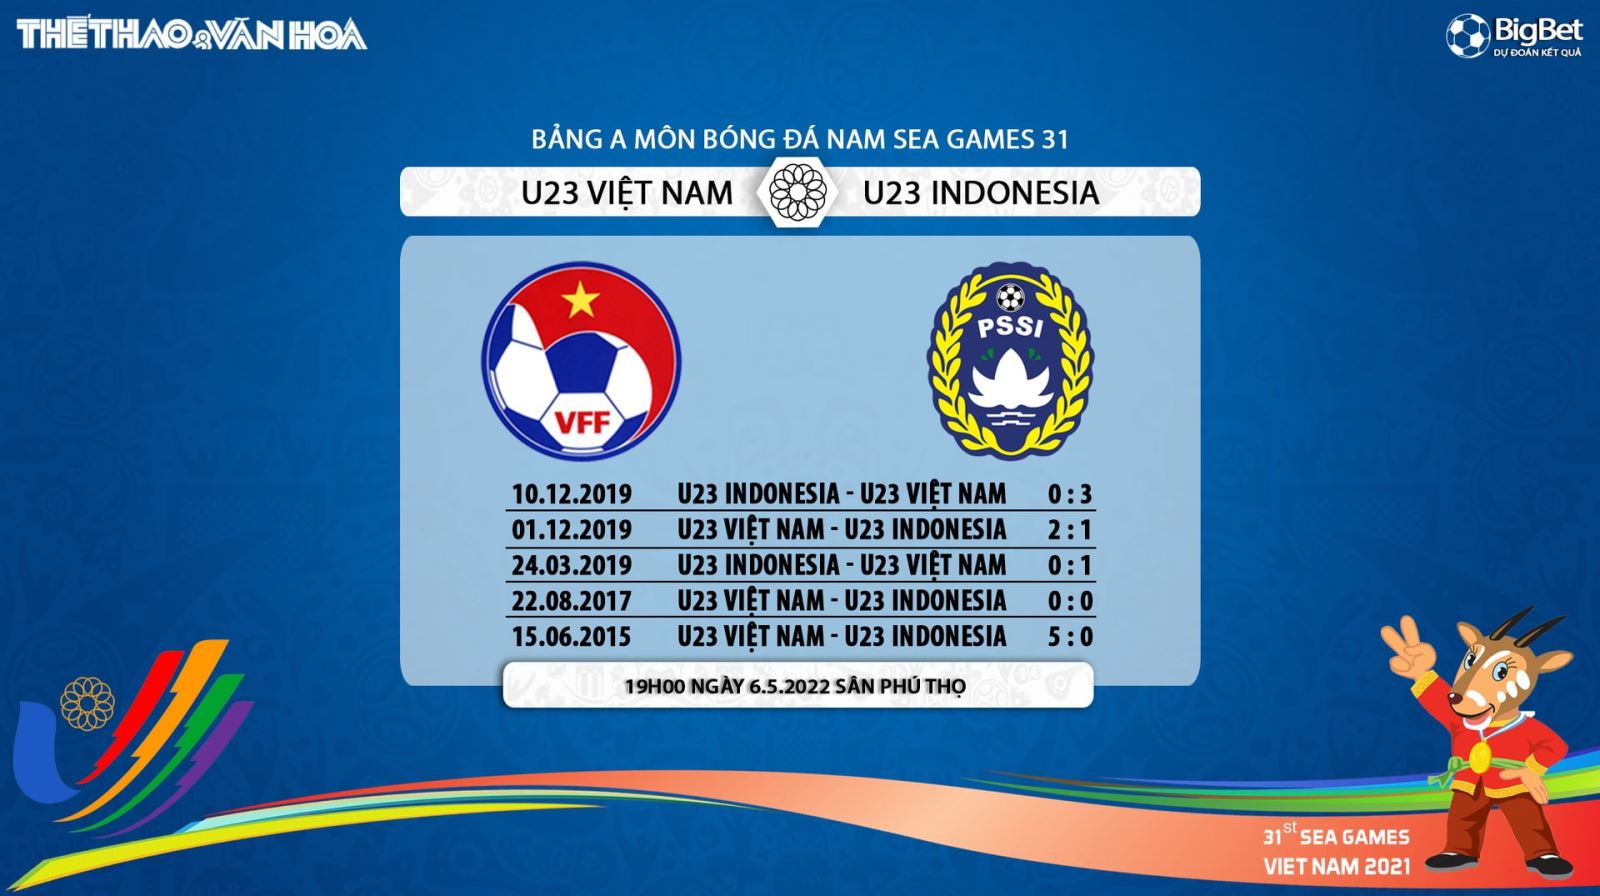 nhận định bóng đá U23 Việt Nam vs Indonesia, nhận định kết quả, U23 Việt Nam vs Indonesia, nhận định bóng đá, U23 VN, U23 Indo, keo nha cai, U23 Việt Nam, dự đoán bóng đá, SEA Games 31